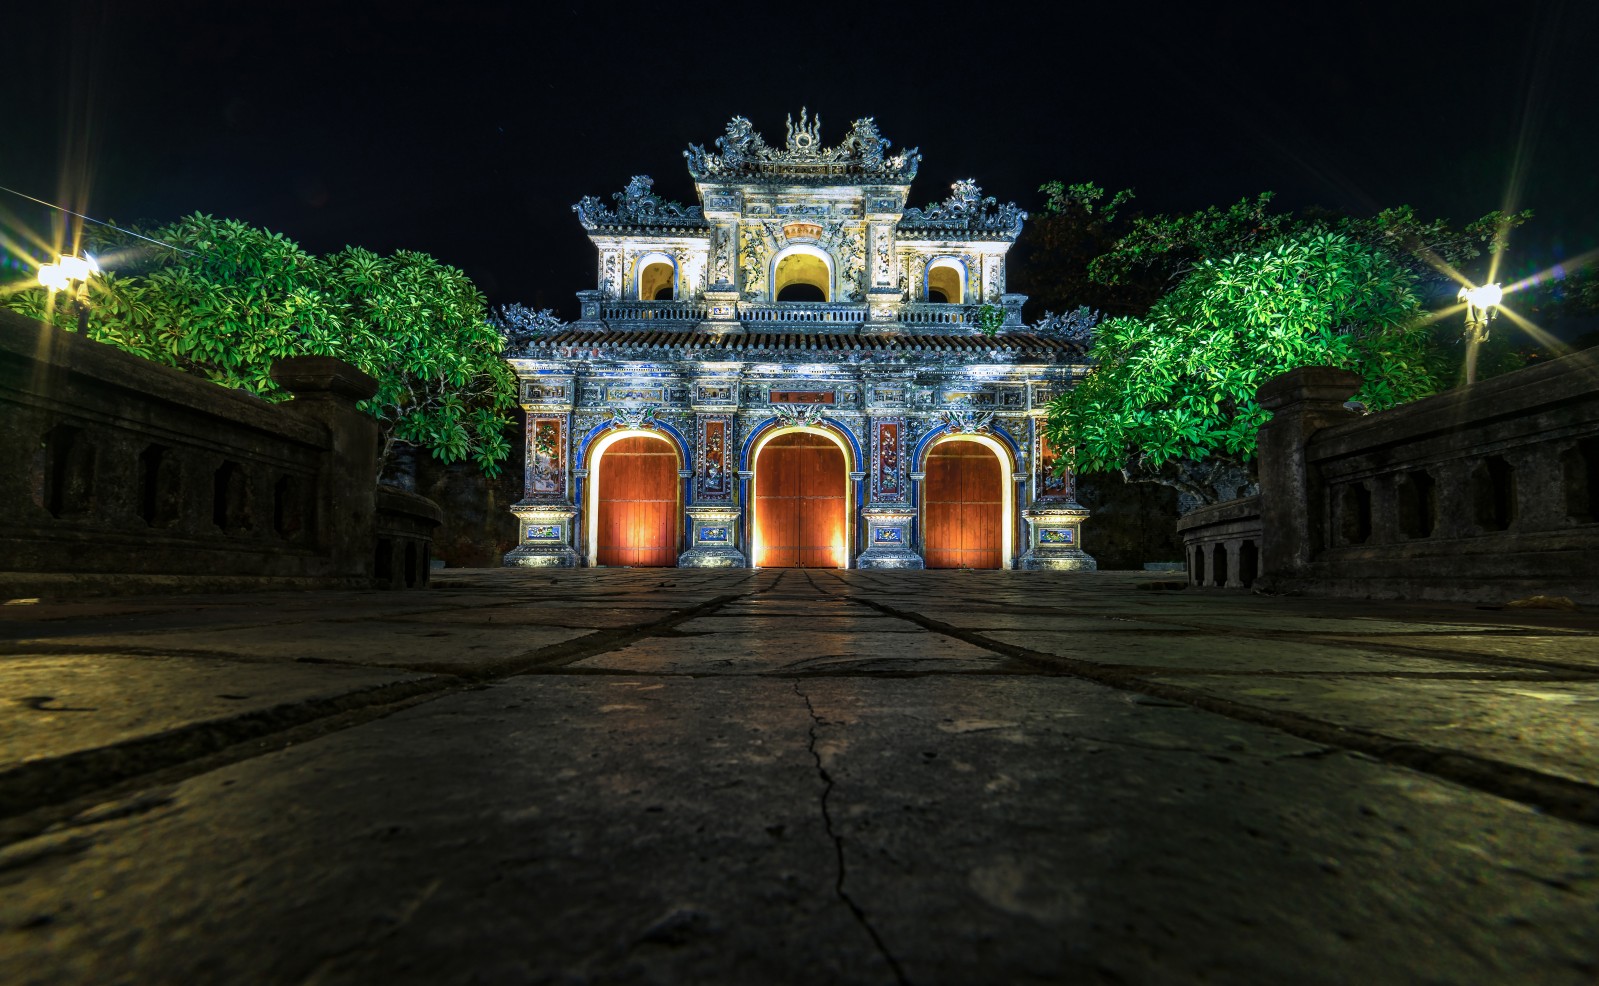 Cánh cổng hòa bình vào ban đêm lối ra của khách du lịch khi tham quan đại nội.​